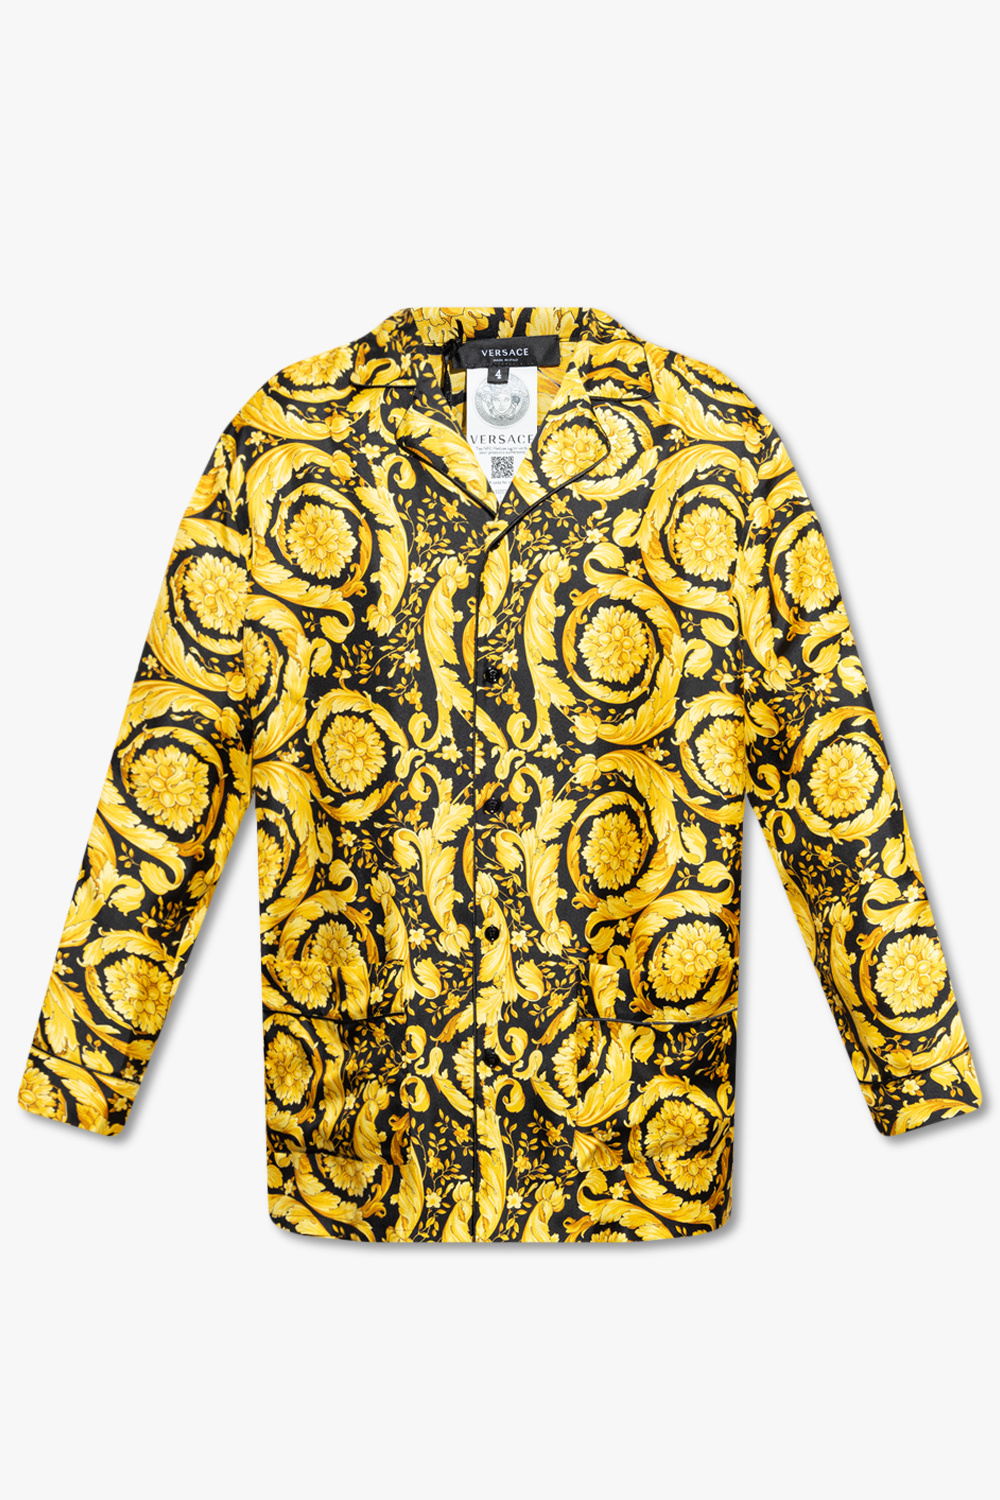 Versace Pyjama top with baroque pattern